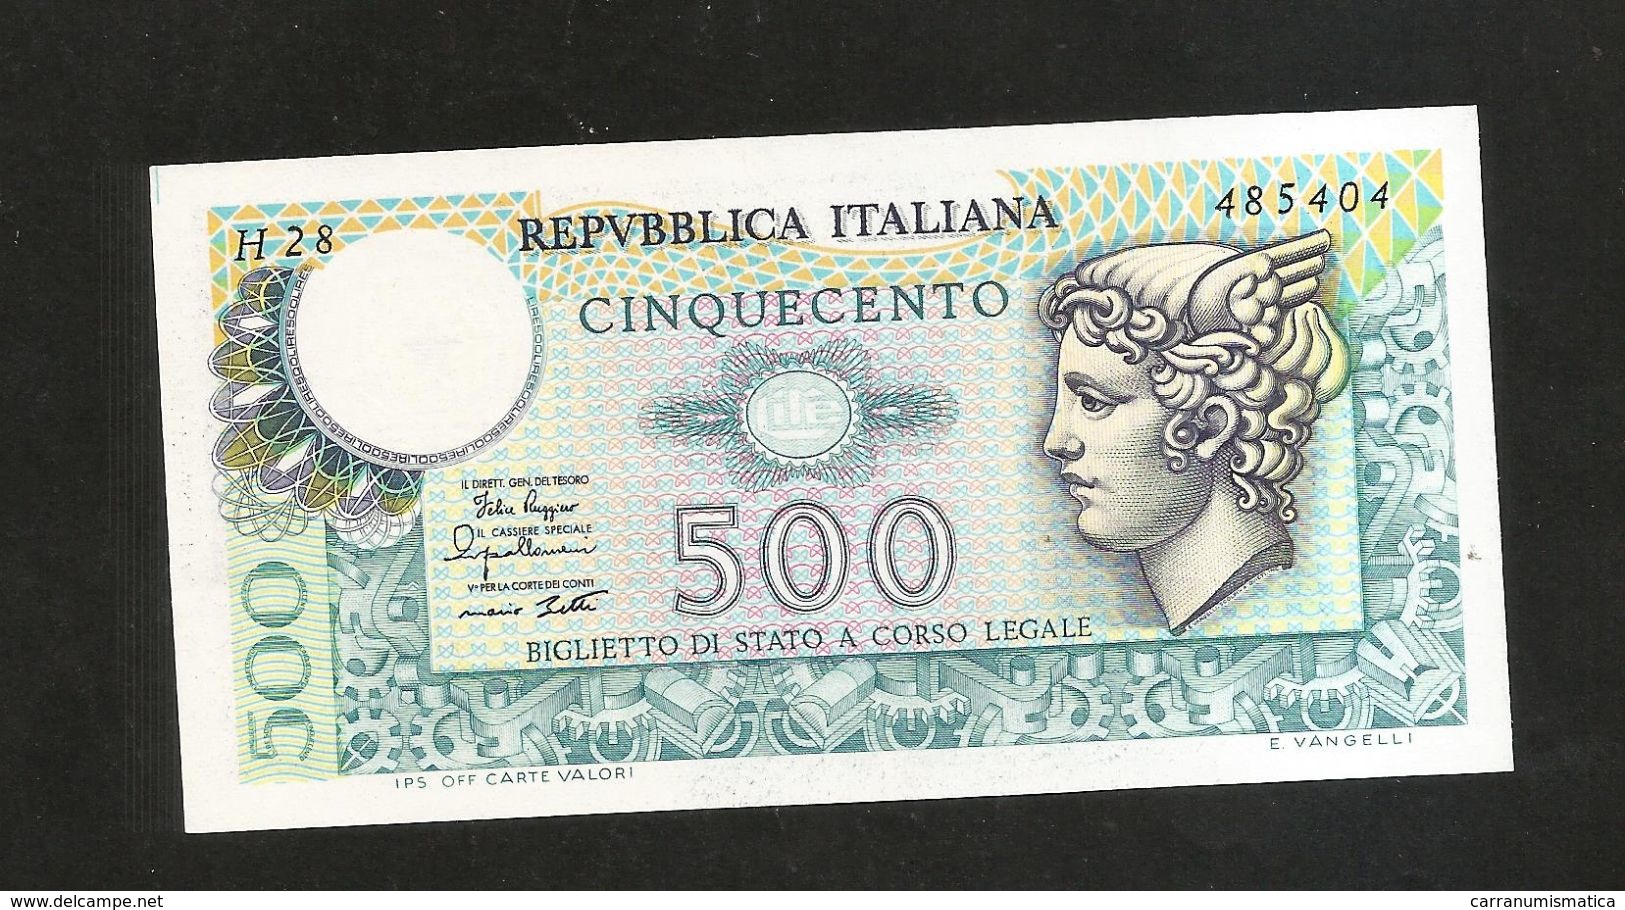 ITALIA - REPUBBLICA ITALIANA - 500 Lire - MERCURIO (Decr. 02/04/1979) - 500 Lire